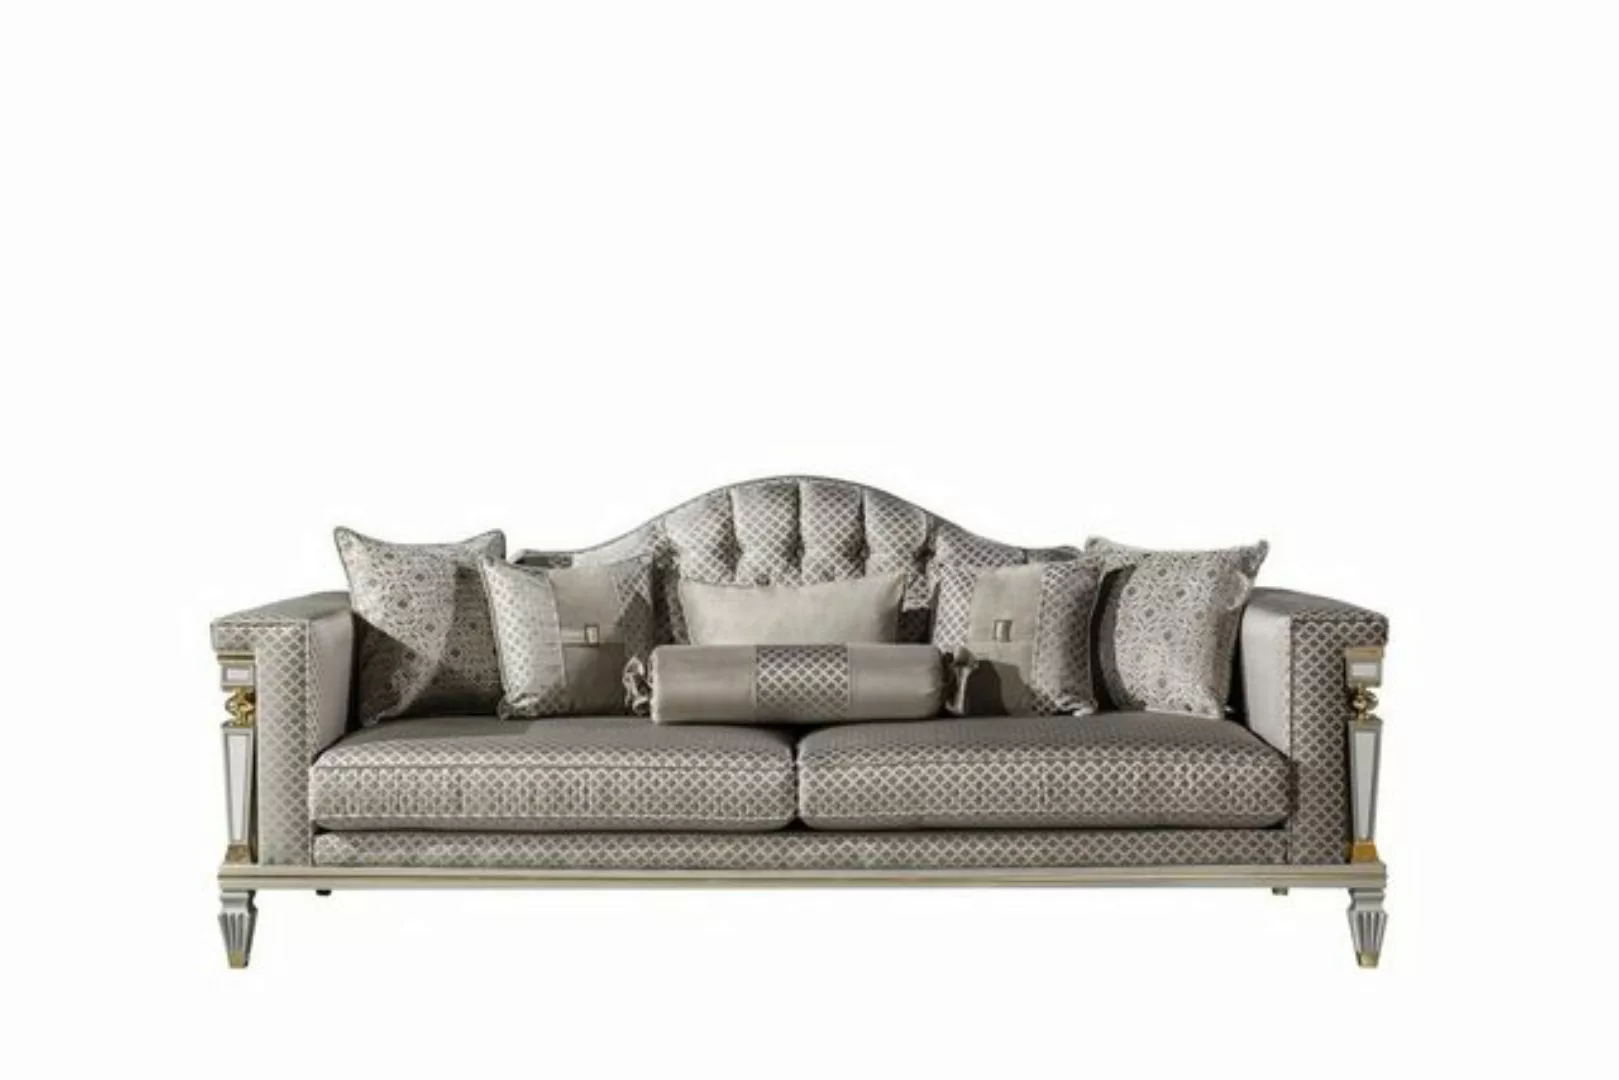 JVmoebel Sofa Silber Grau Sofa Couch Dreisitzer Luxus Möbel xxl couchen big günstig online kaufen